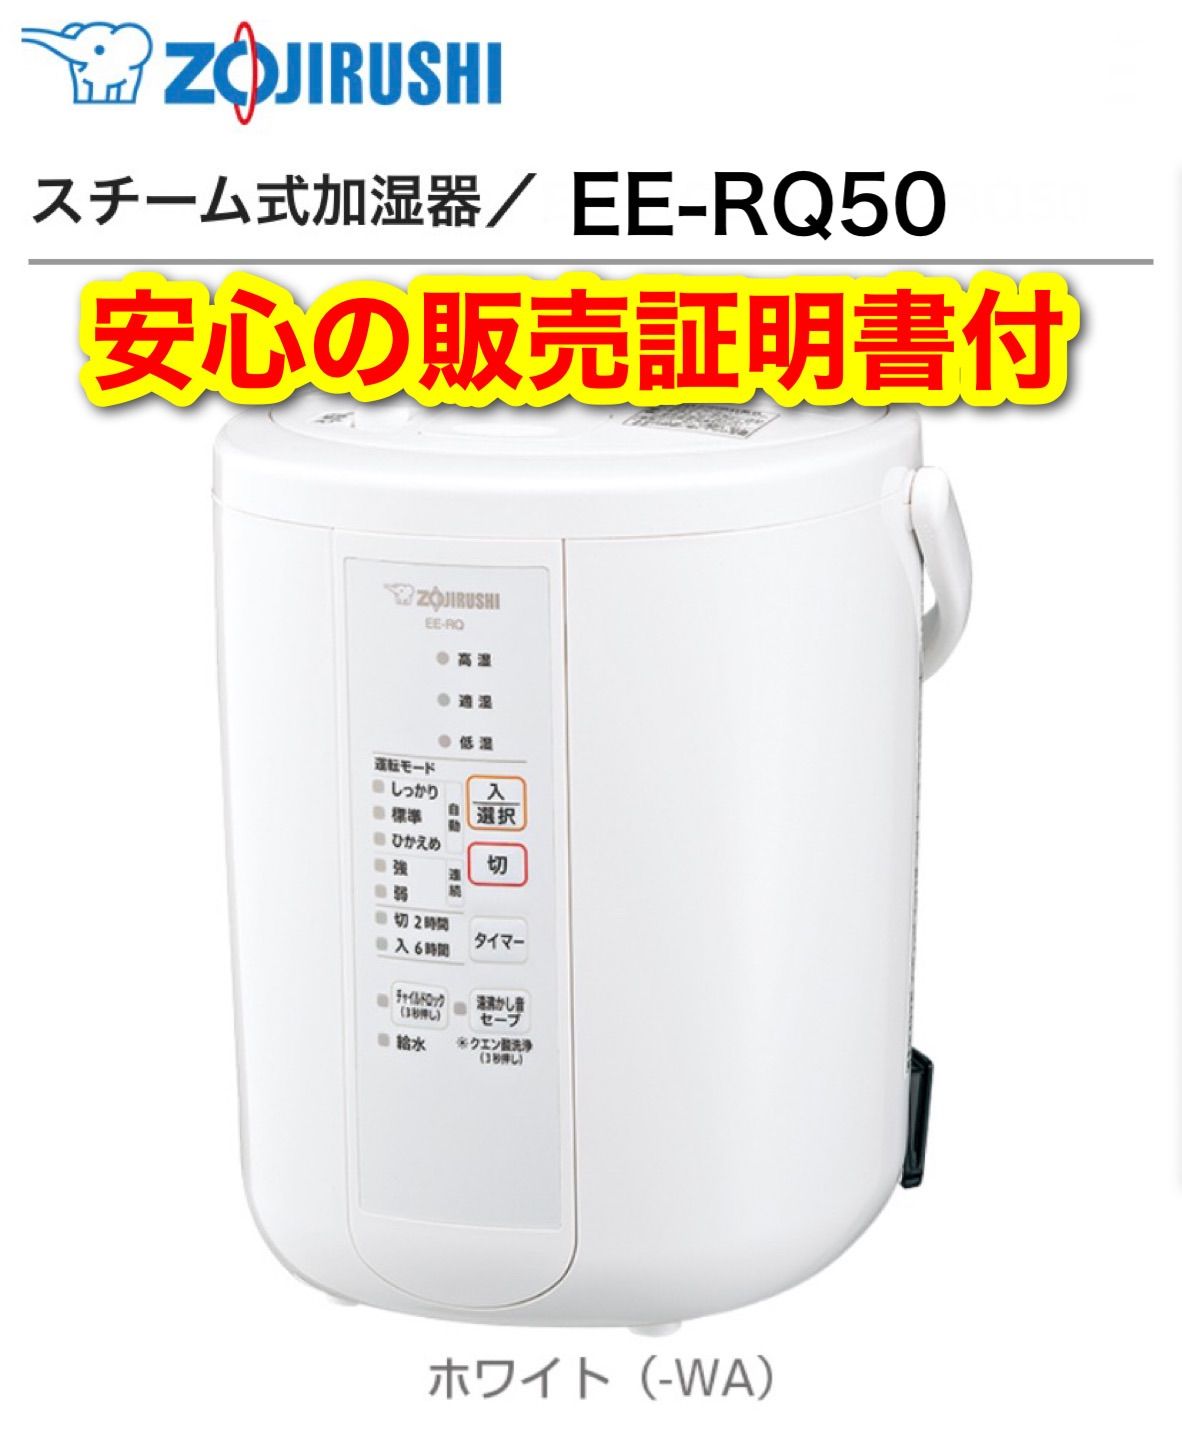 象印 スチーム式加湿器 EE-RQ50-WA ホワイト 新品未使用 販売証明書付